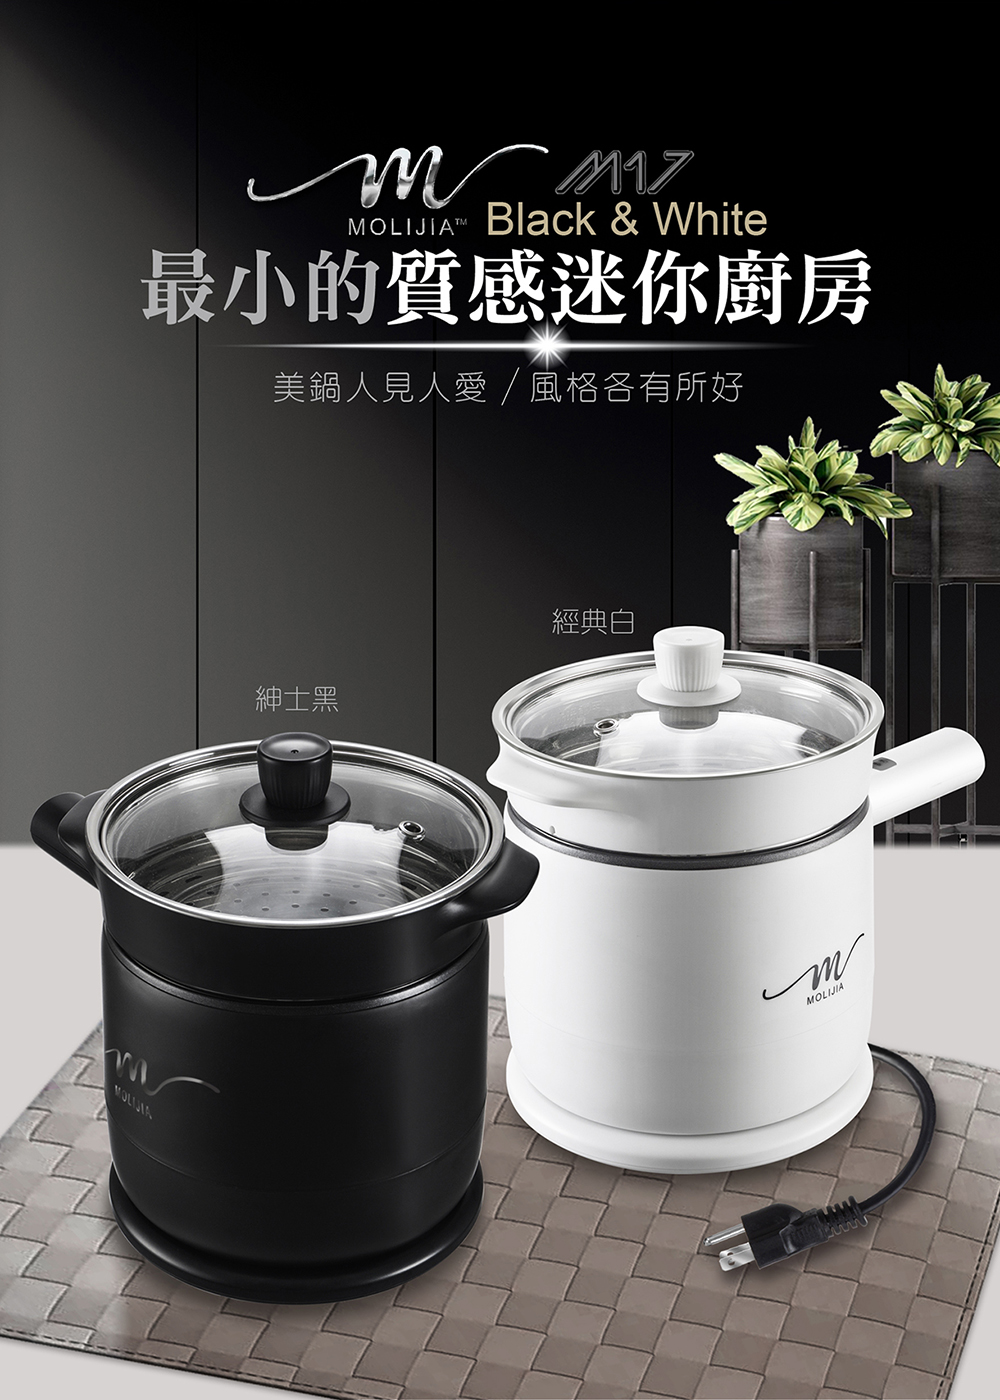 M17 多功能不沾快煮小電鍋1.8L-單色款-BY011017-產品介紹-Taiwan台灣 